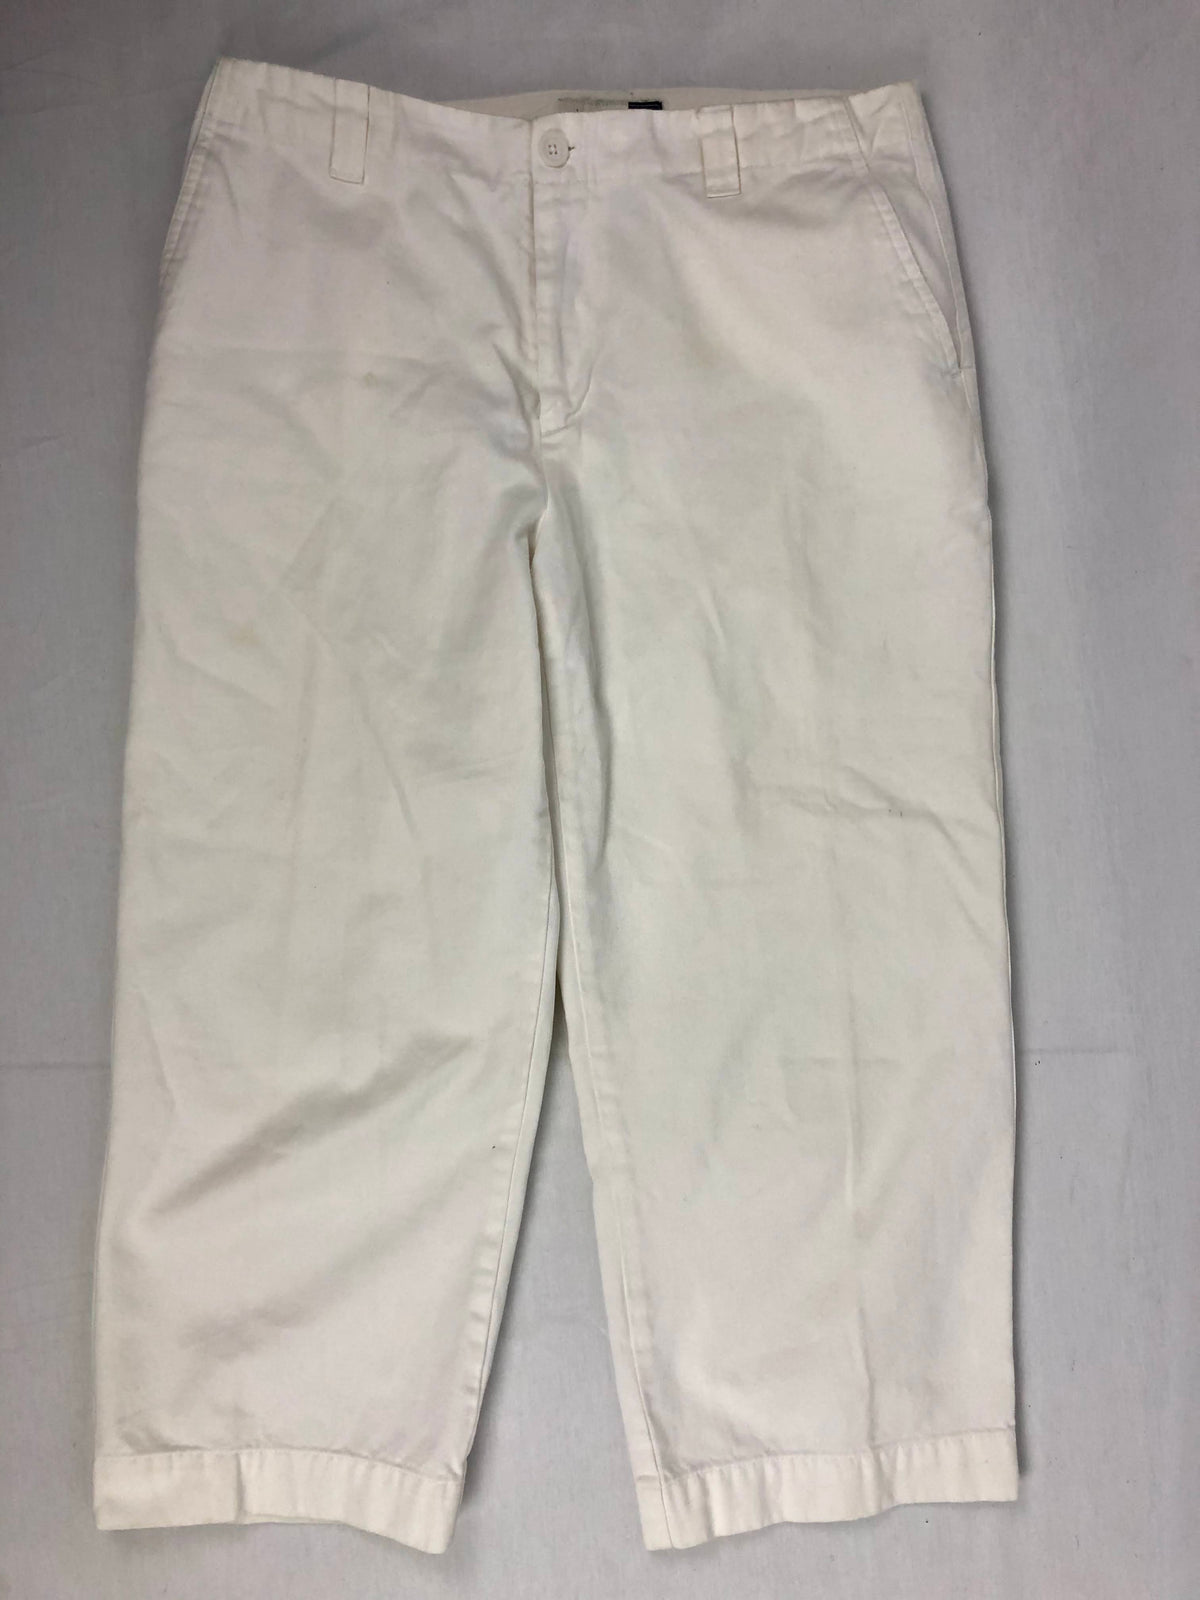 Gap Clean Cut White Capri Pants Size 10 — Family Tree Resale 1